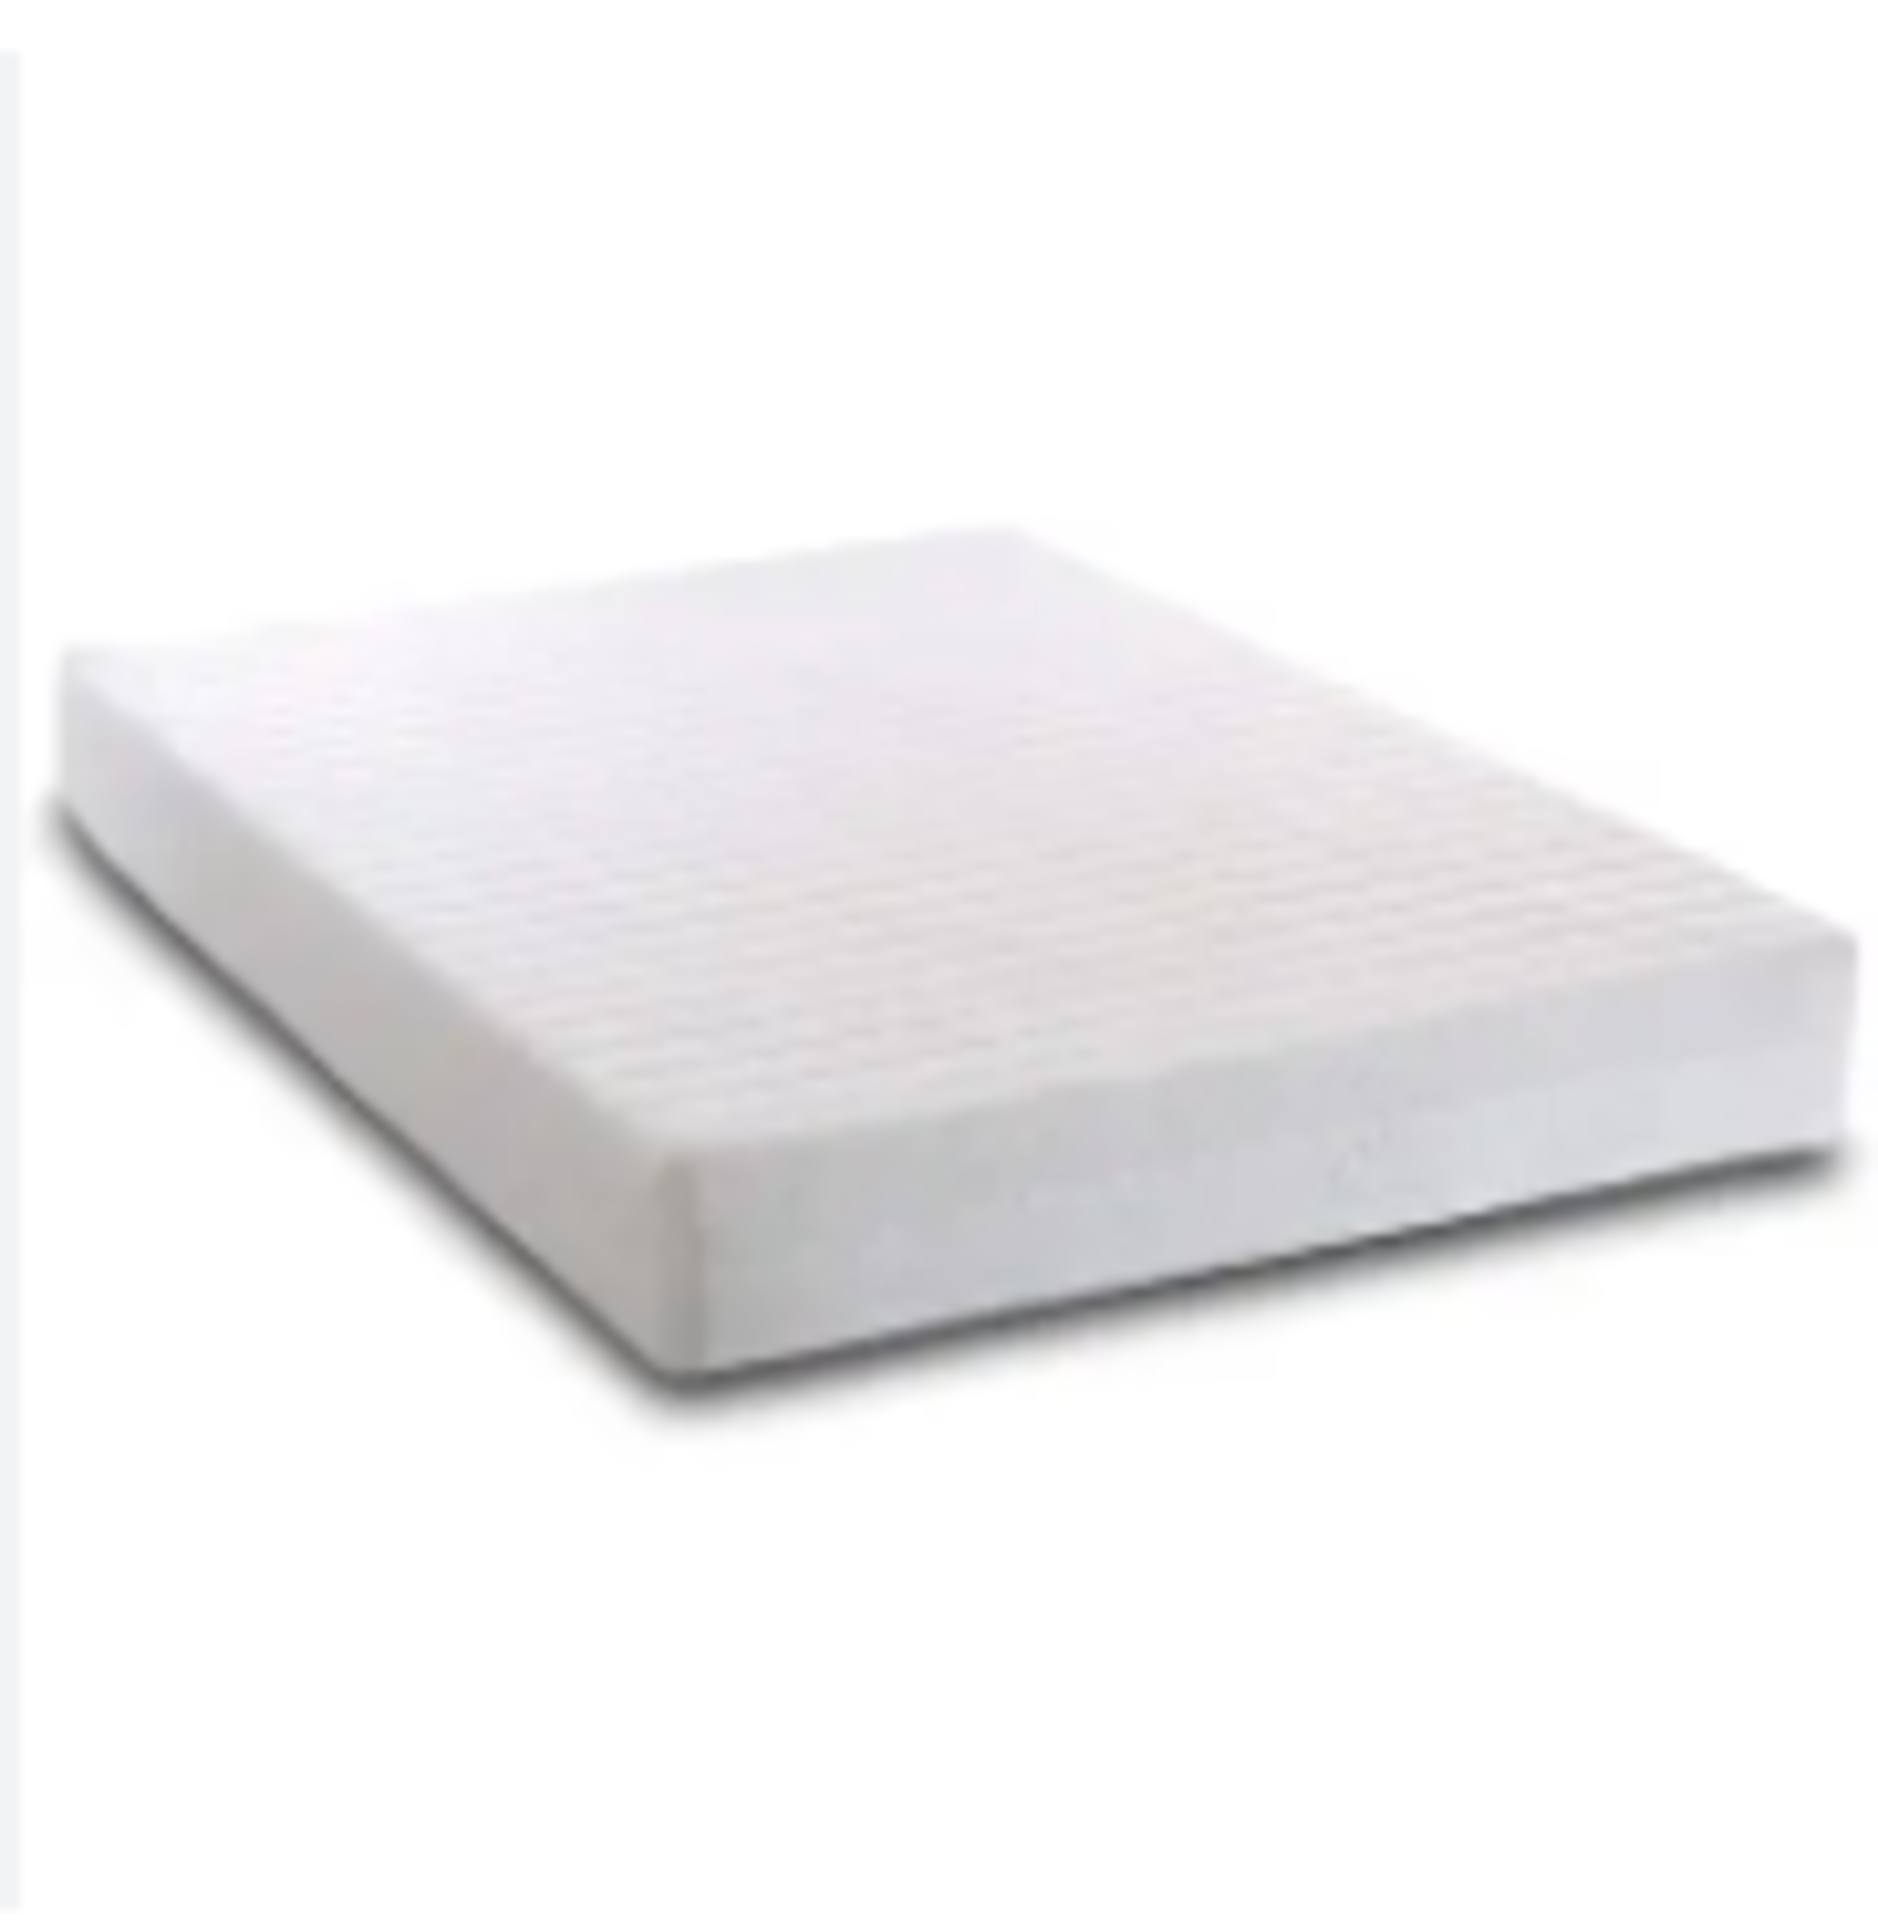 RRP £220 Symple Stuff Kipp Reflex Foam Mattress Size: Double (4'6) Jslw1019.52928591 (Condition